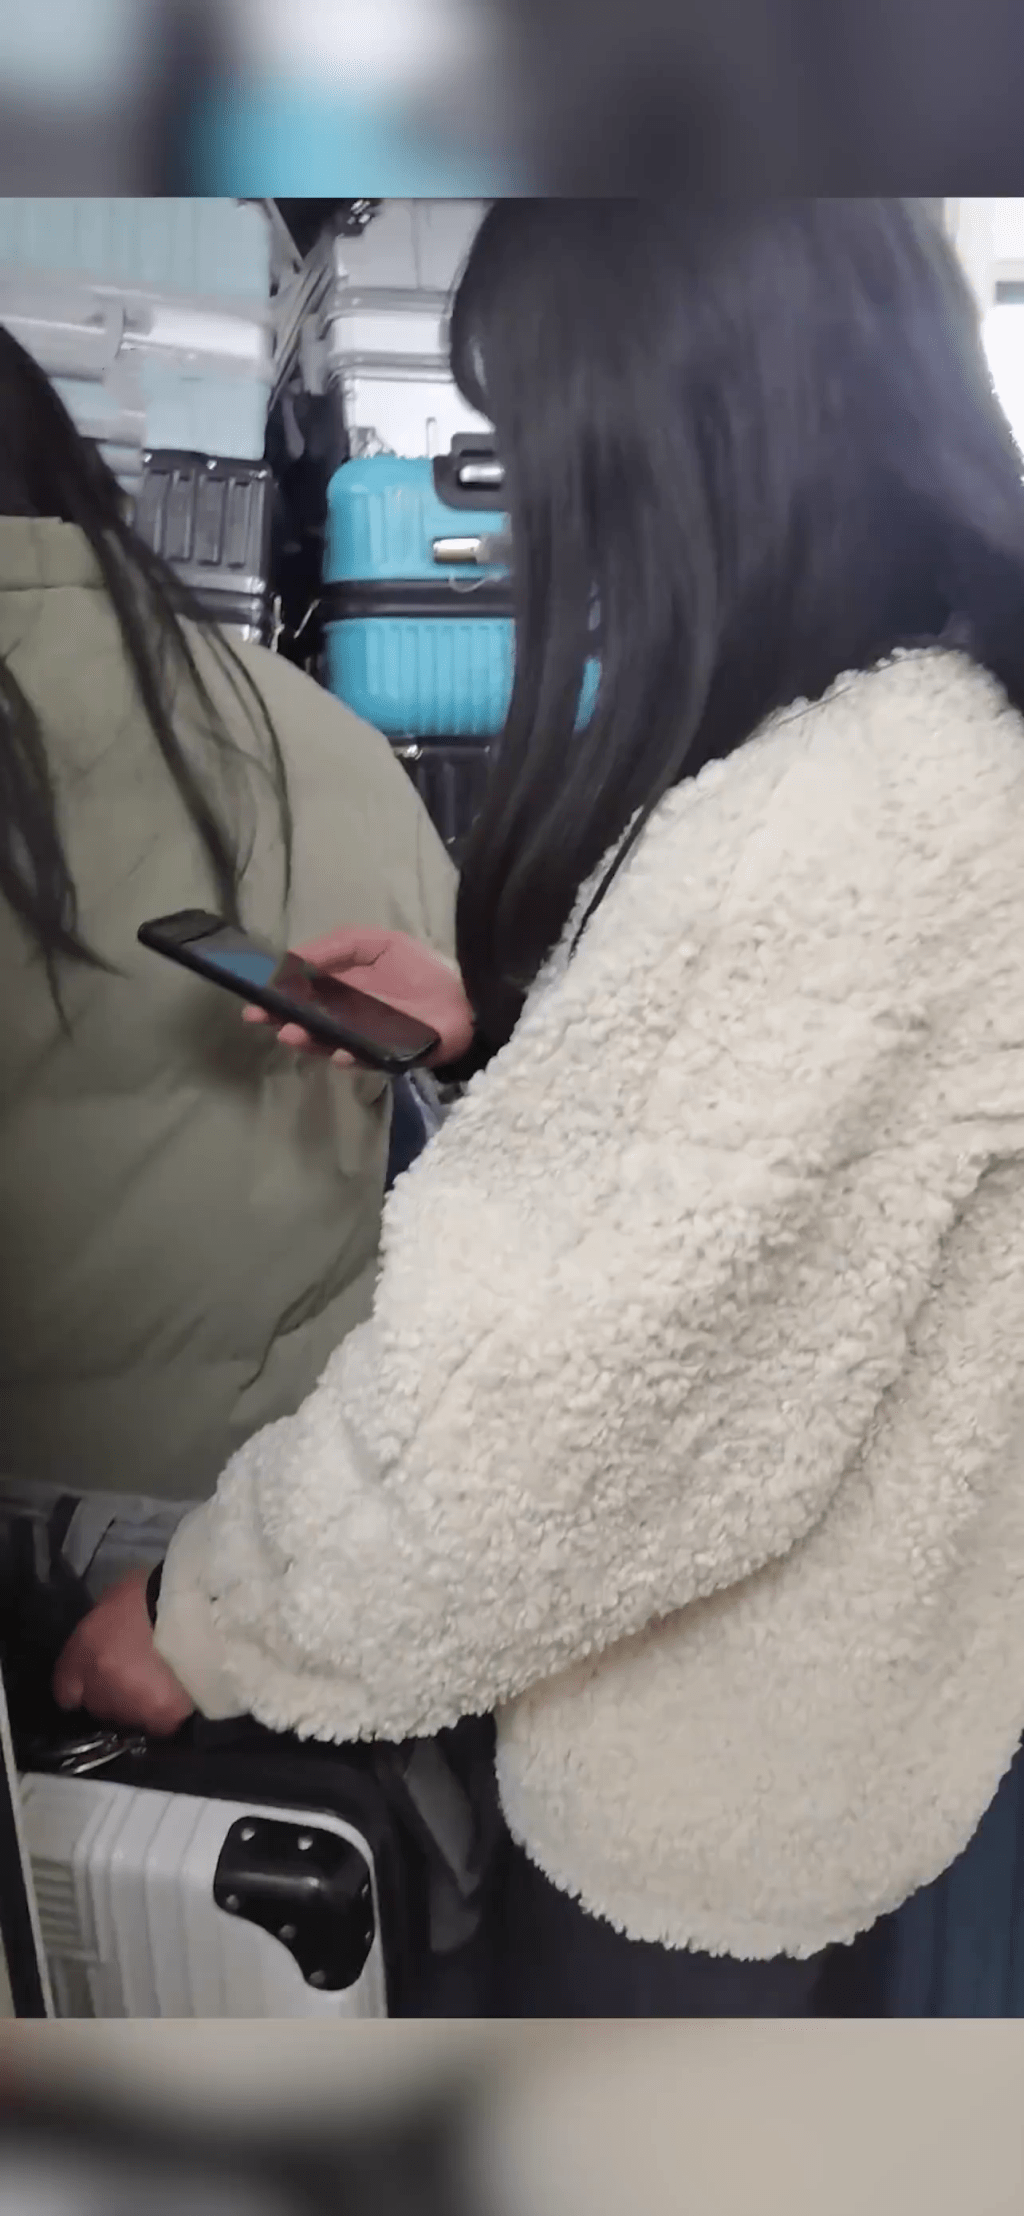 從陳同學的視覺看出去，火車走廊上的確擠滿了人，一名女生就在門外睇手機。